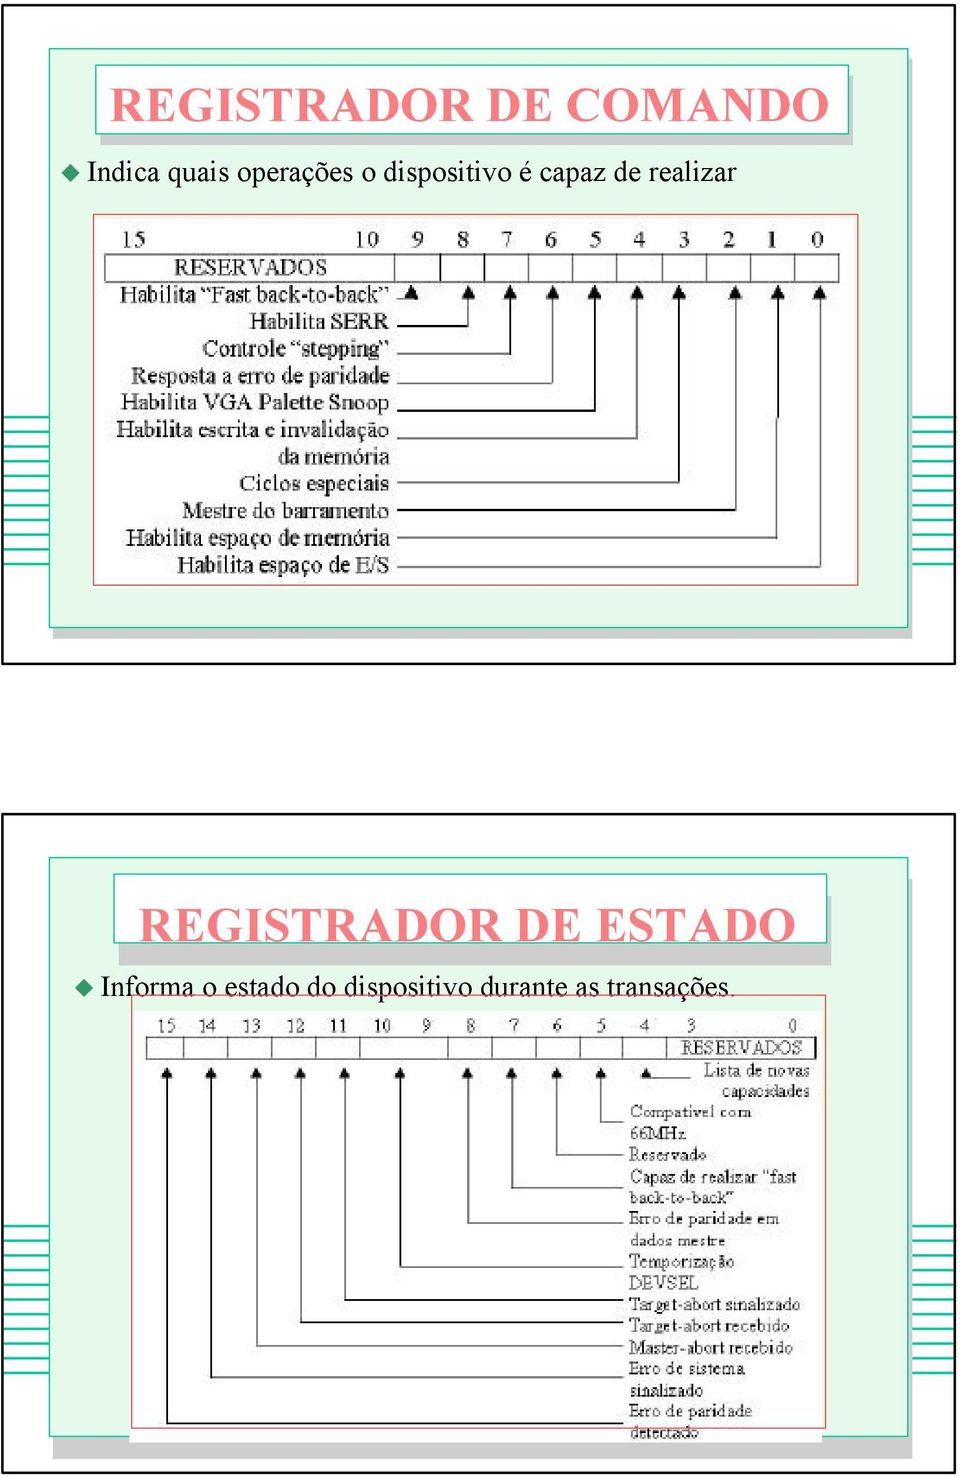 realizar REGISTRADOR DE ESTADO Informa